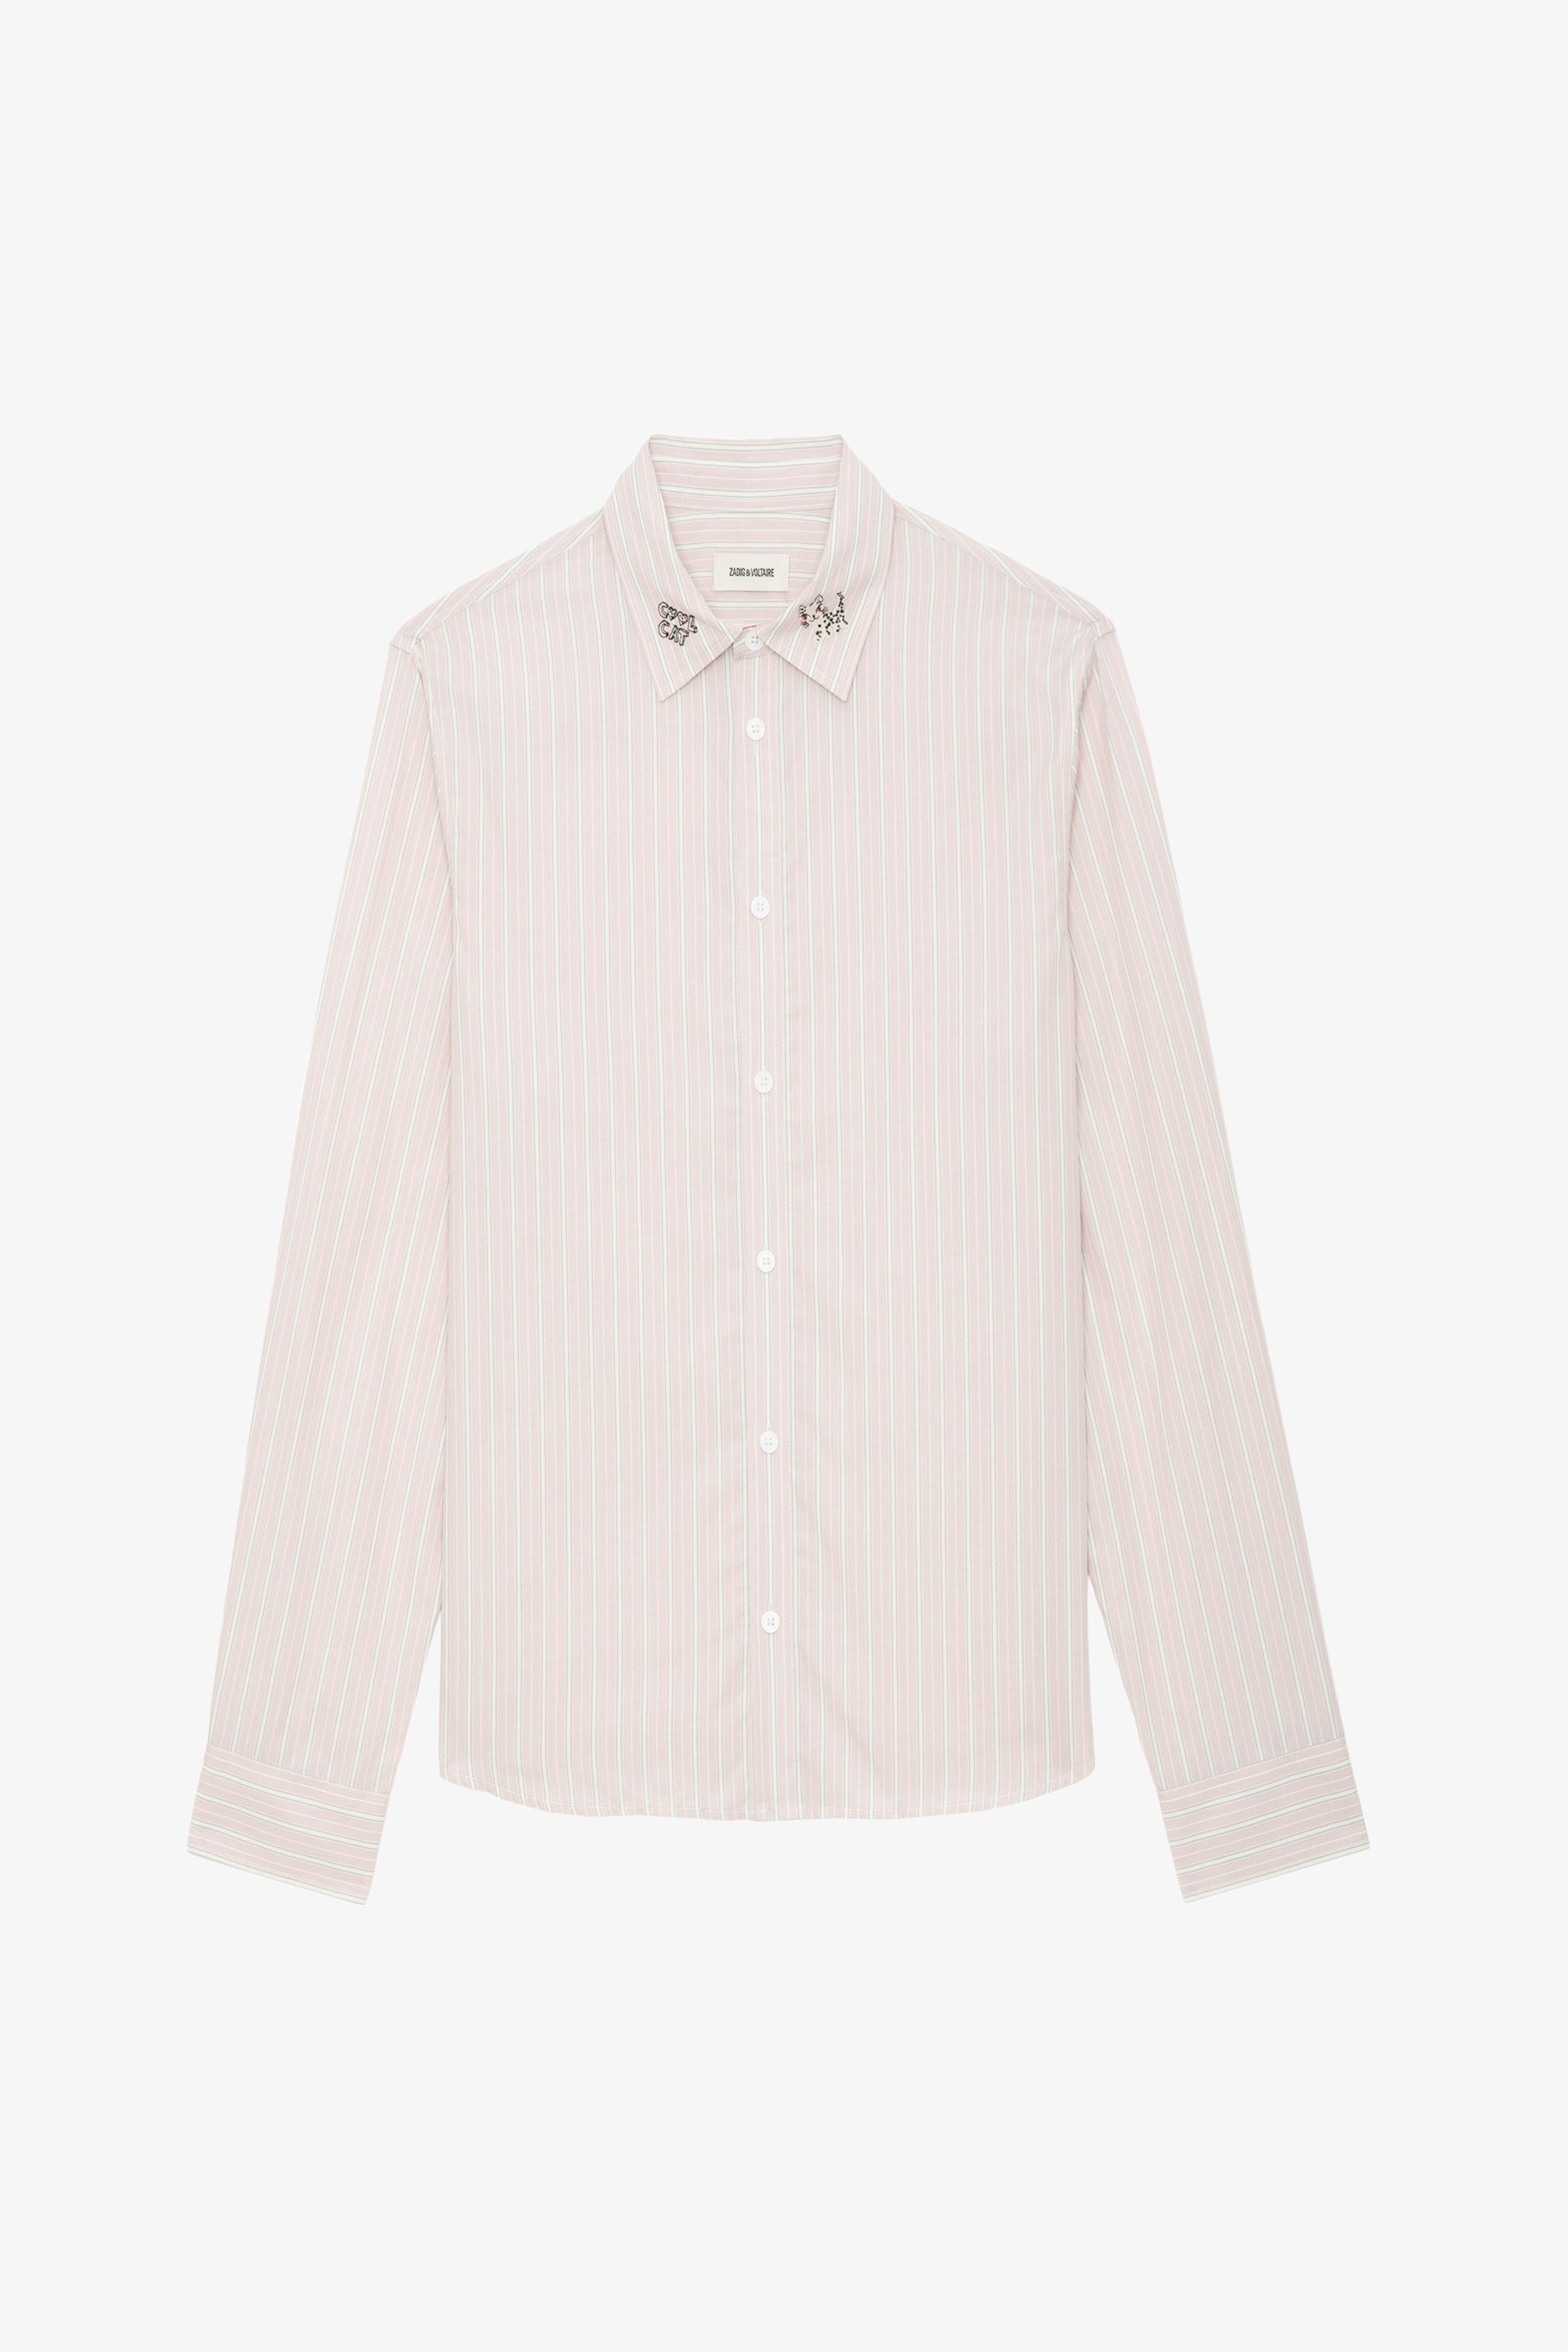 Camisa Sydna - Camisa de algodón en color rosa palo con mangas largas, rayas y detalles decorativos de Humberto Cruz.